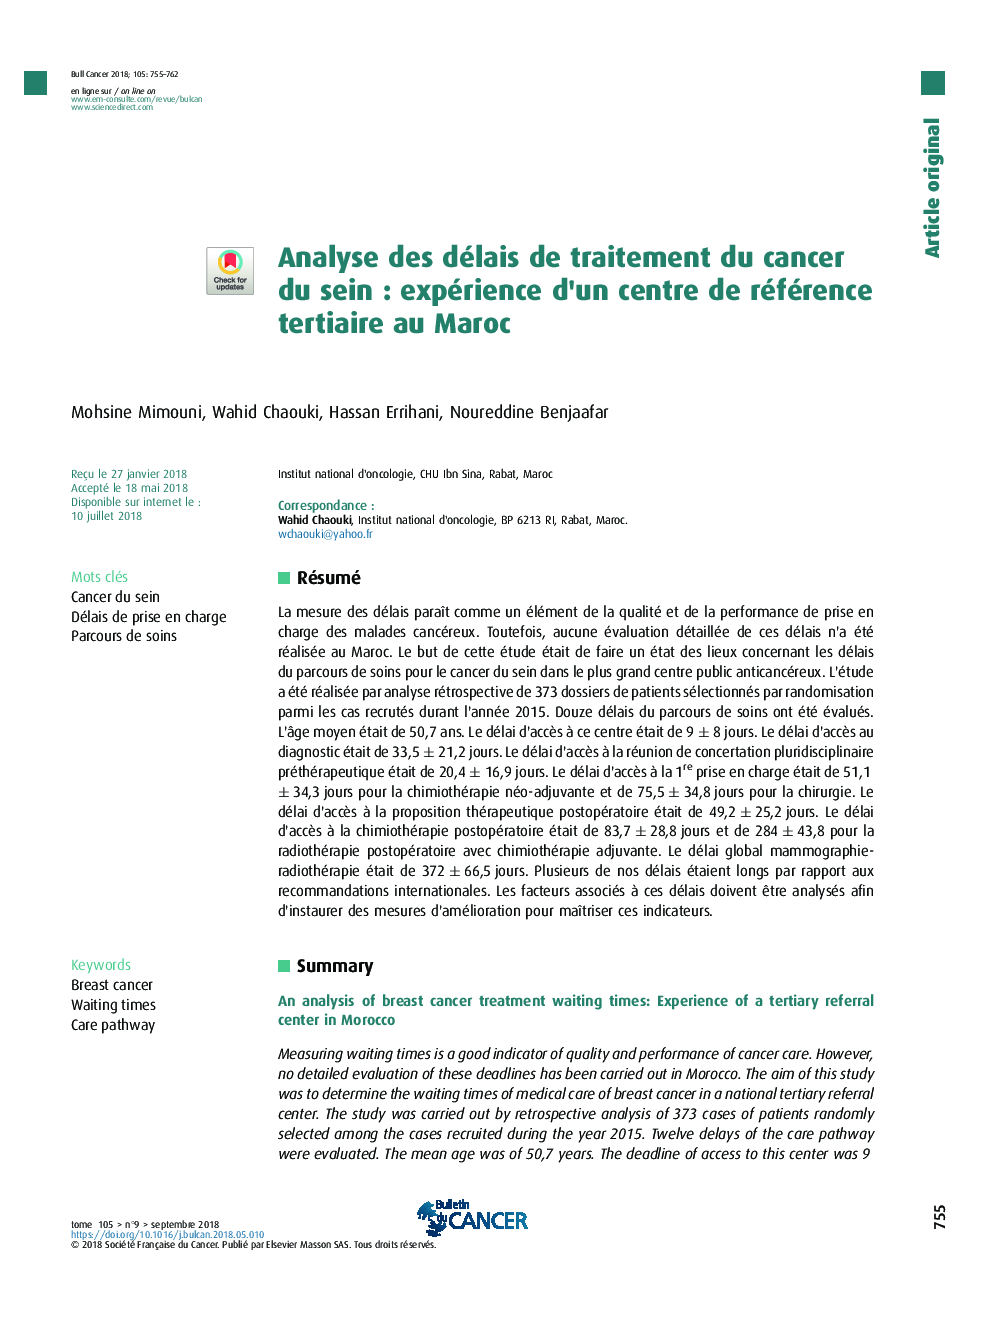 Analyse des délais de traitement du cancer du seinÂ : expérience d'un centre de référence tertiaire au Maroc